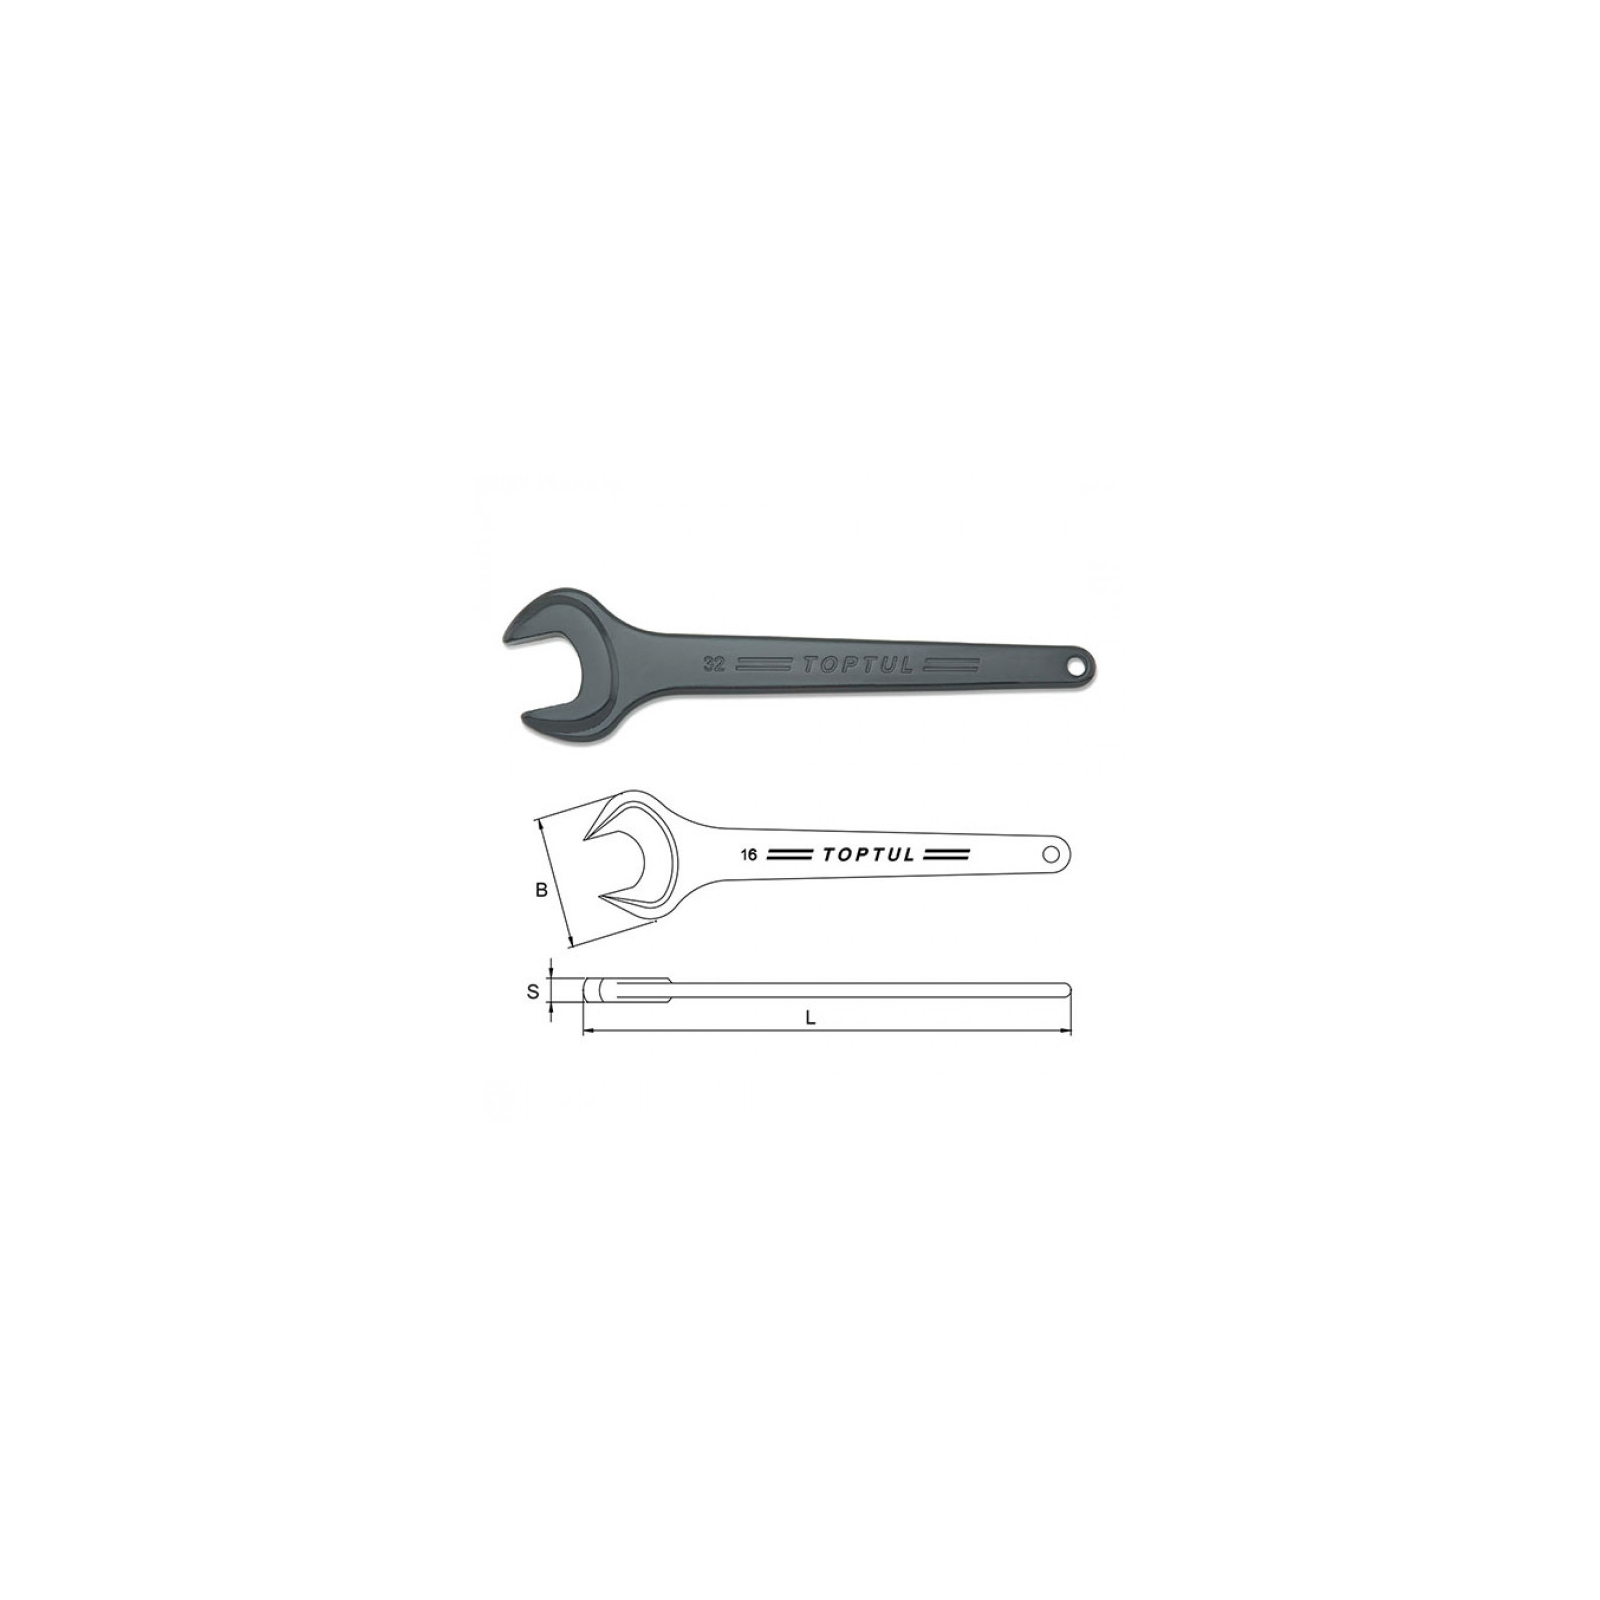 Ключ Toptul рожковый односторонний (усиленный) 38мм (AAAT3838) изображение 2